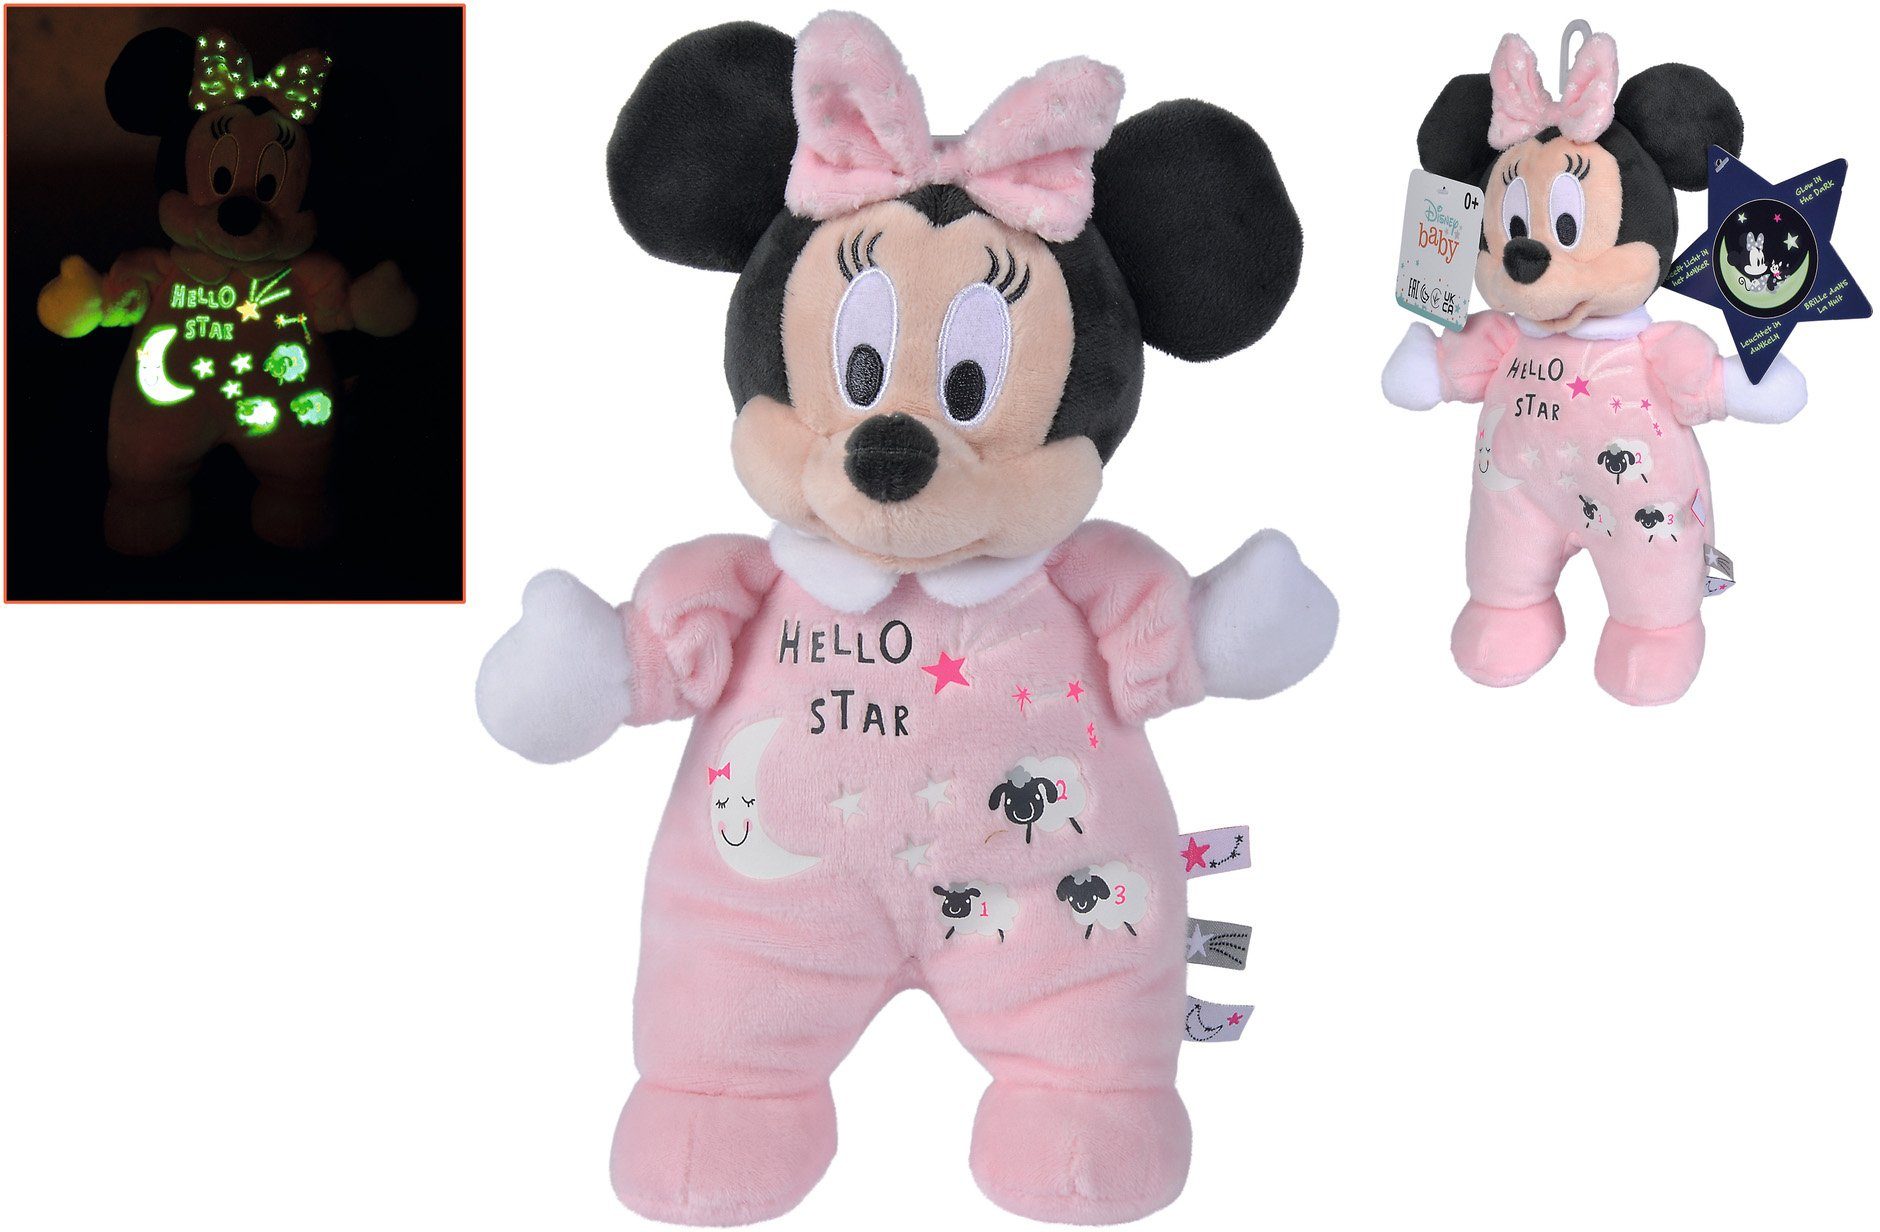 SIMBA Plüschfigur Minnie mit the Disney Starry Glow dark, 25cm, Night, Elementen leuchtenden in